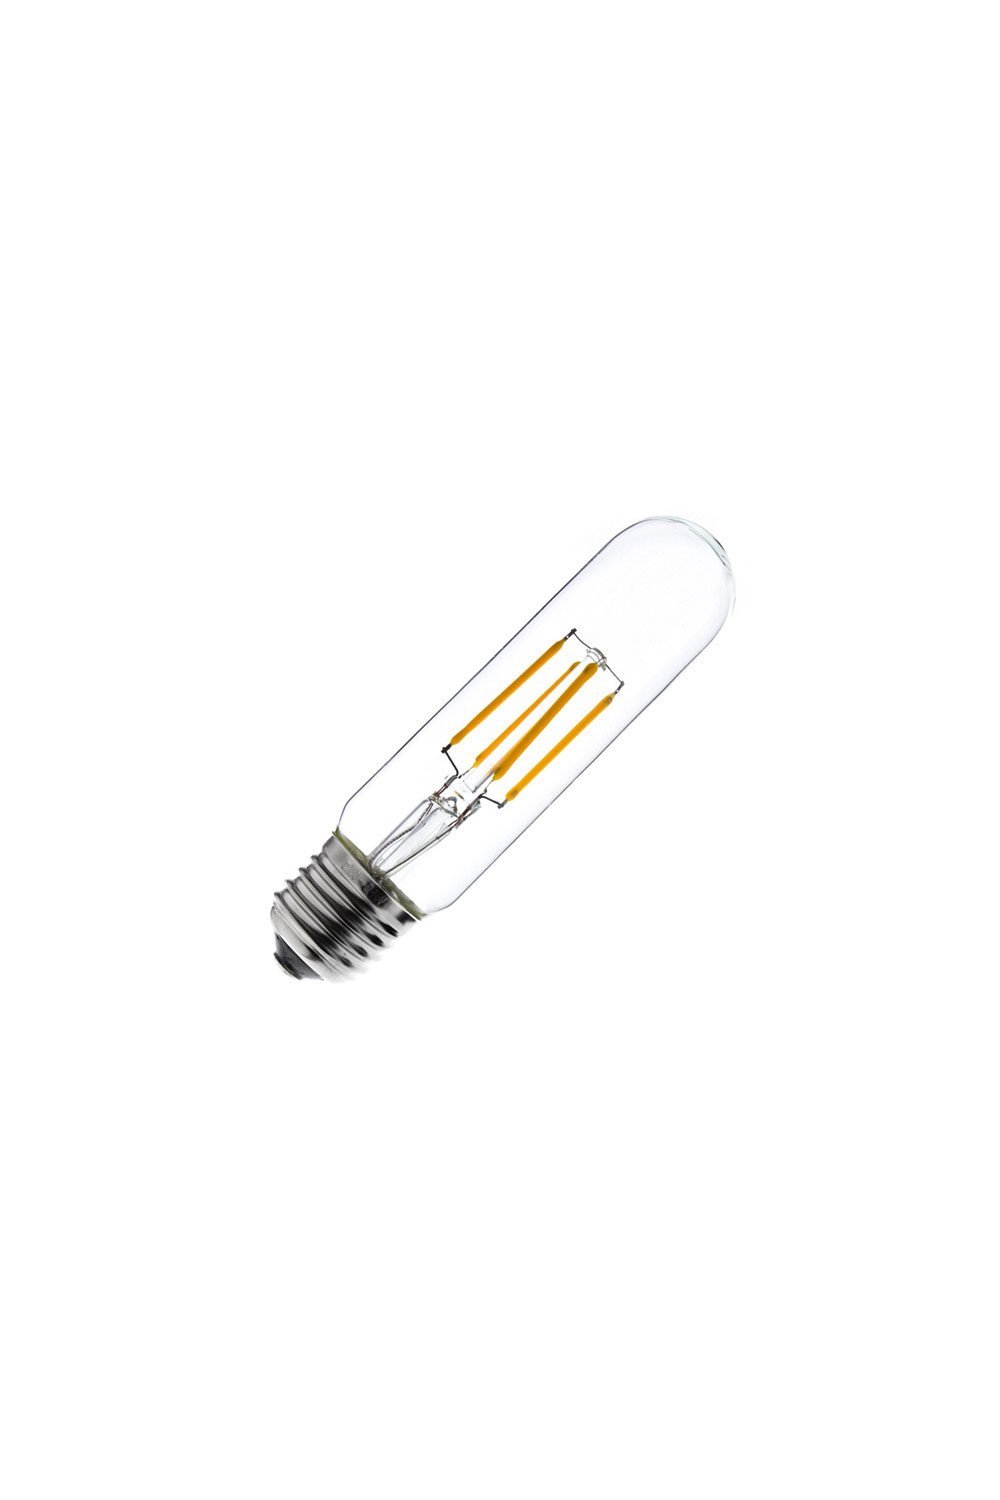 LED Lamp E27 Dimbare Filament T30-S 3.5W, galerij beeld 1